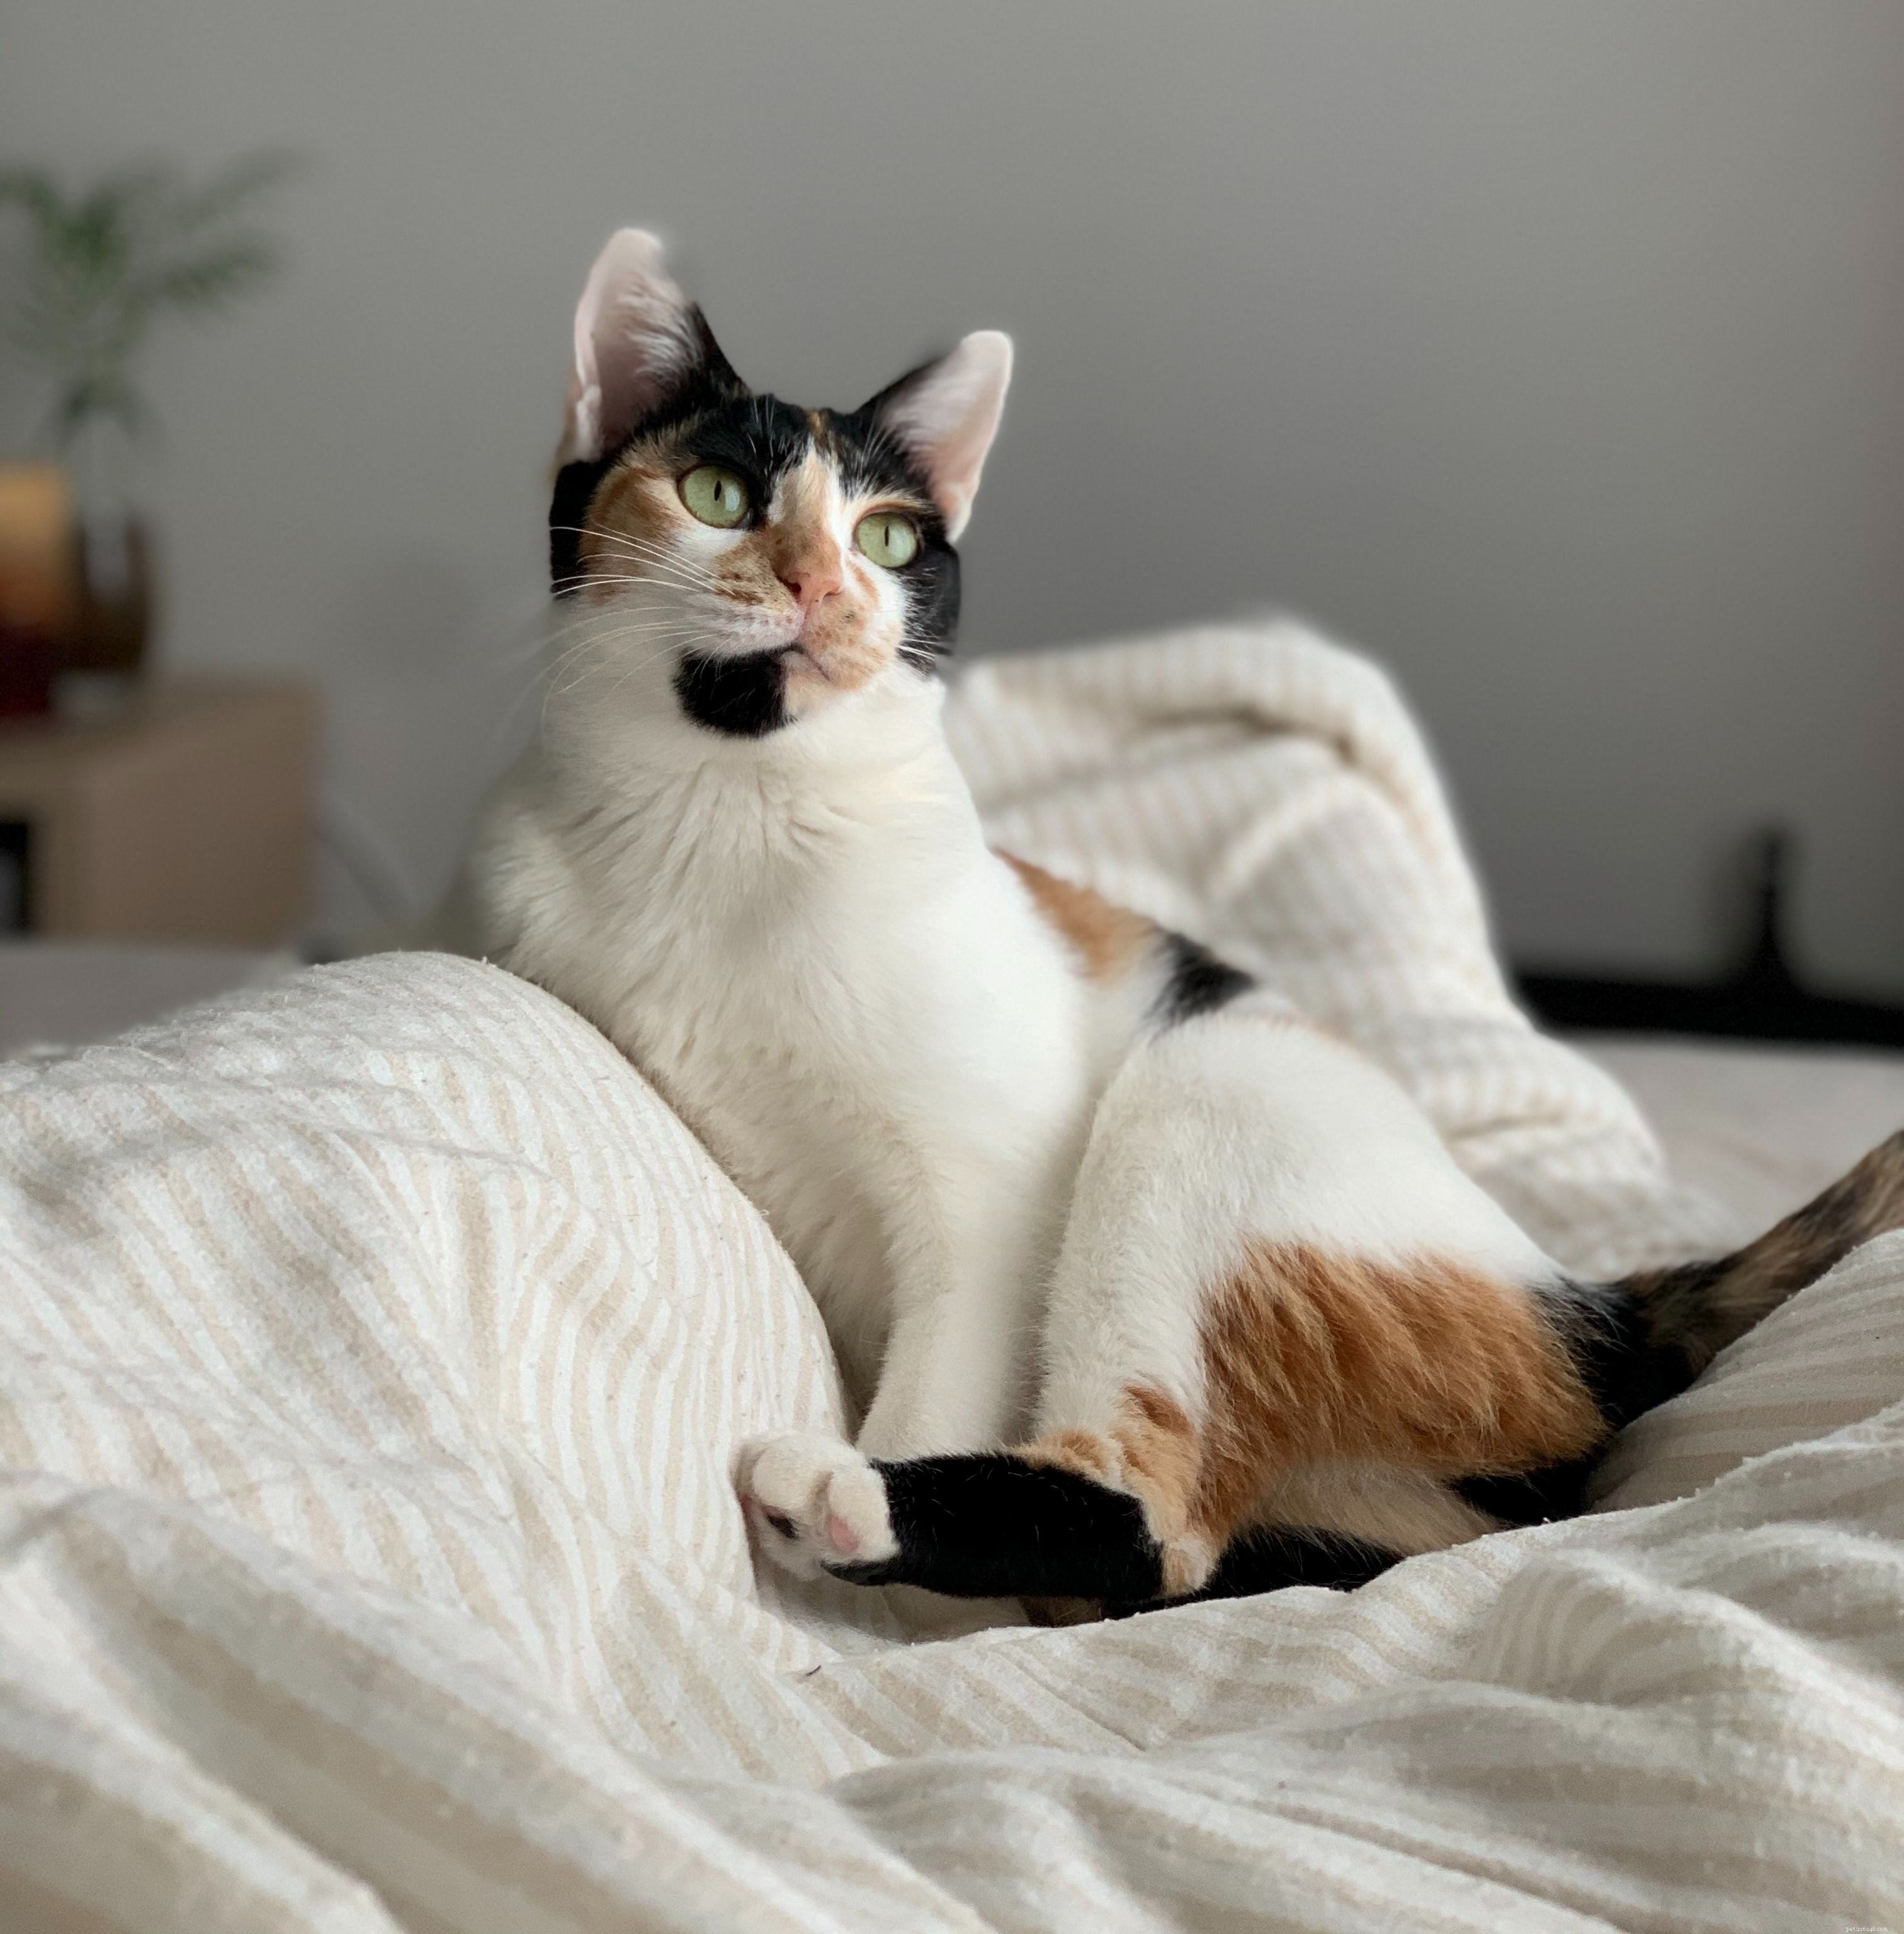 Essentiële oliën hebben een breed scala aan toepassingen, van kalmerende aromatherapie tot het laten ruiken van onze huizen en schoonheidsproducten, maar ze kunnen ook schadelijk zijn voor katten. 